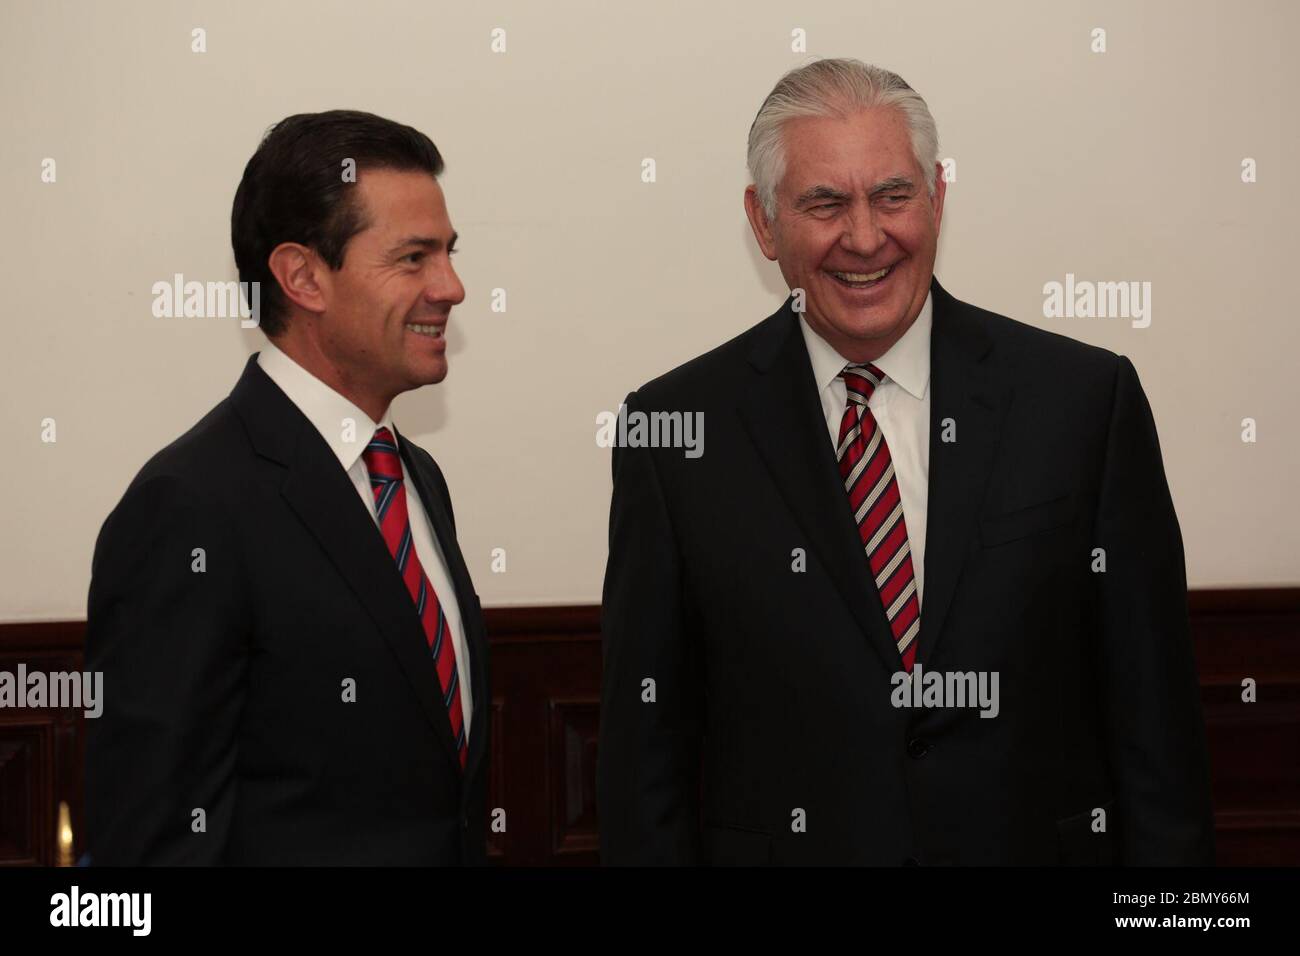 Le secrétaire Tillerson discute avec le président mexicain Enrique Peña Nieto à Los Pinos le secrétaire d’État américain Rex Tillerson discute avec le président du Mexique Enrique Peña Nieto à Los Pinos à Mexico, Mexique, le 2 février 2018. Banque D'Images